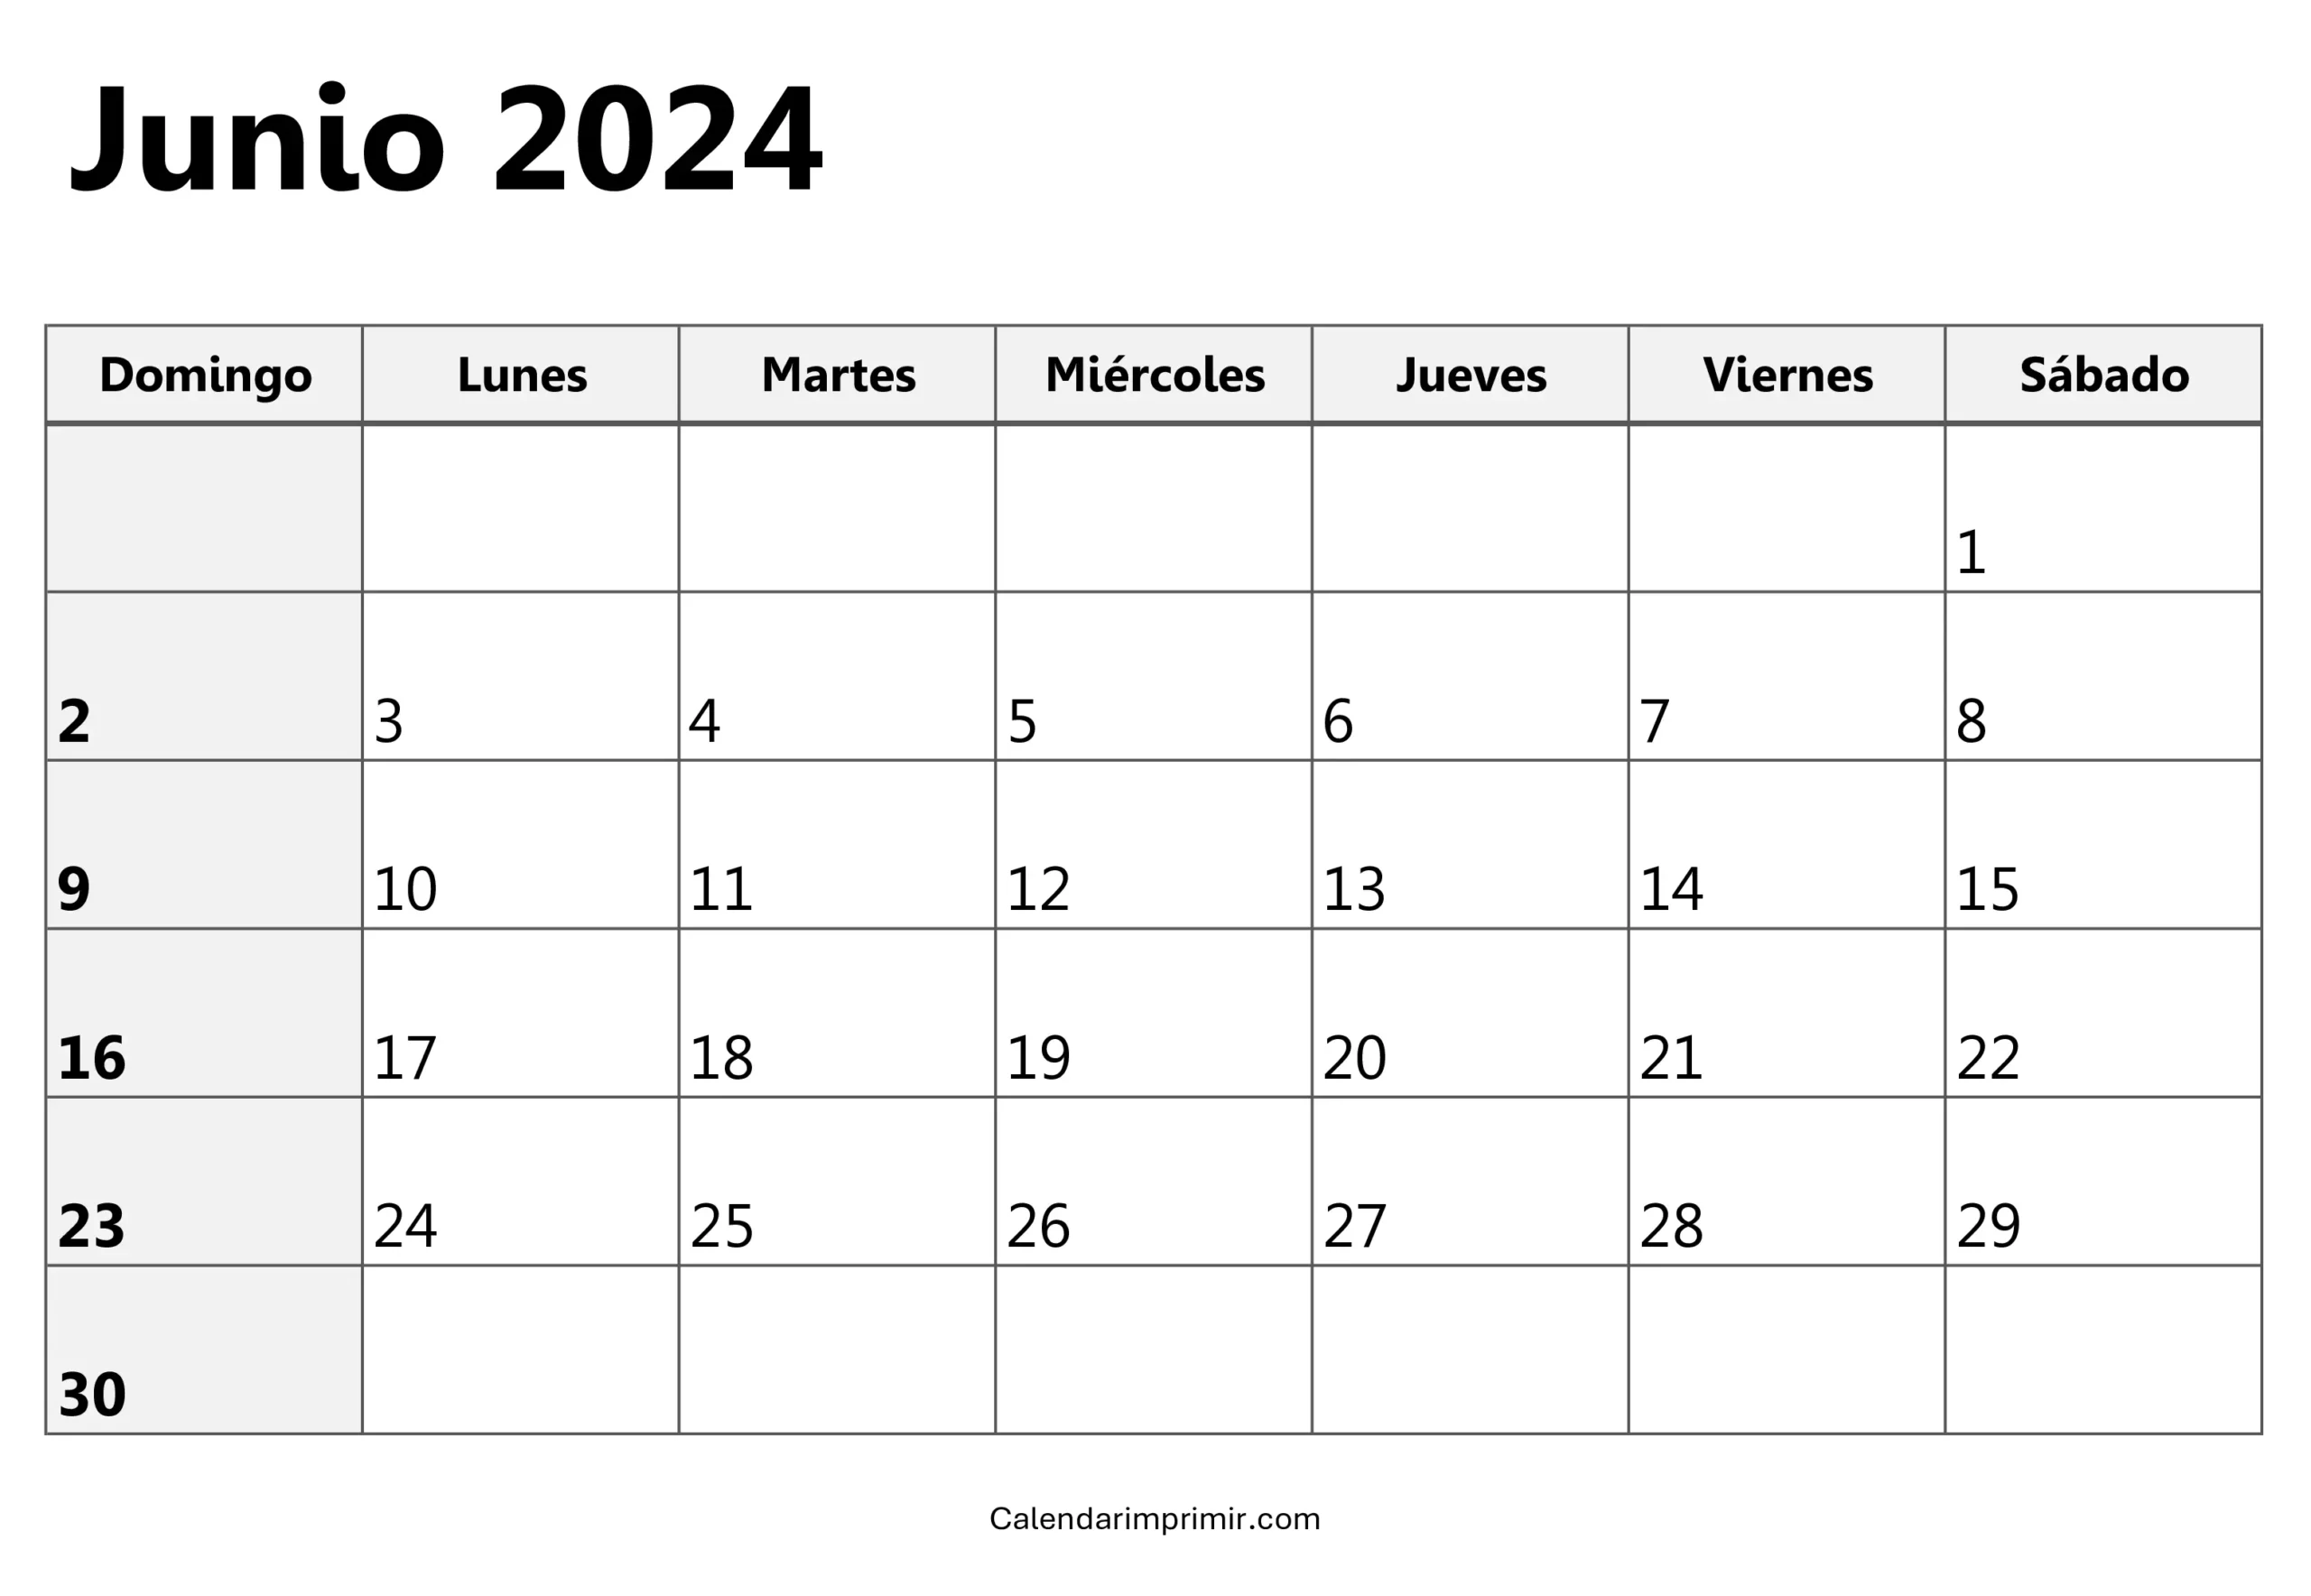 Calendario Junio 2024 para imprimir